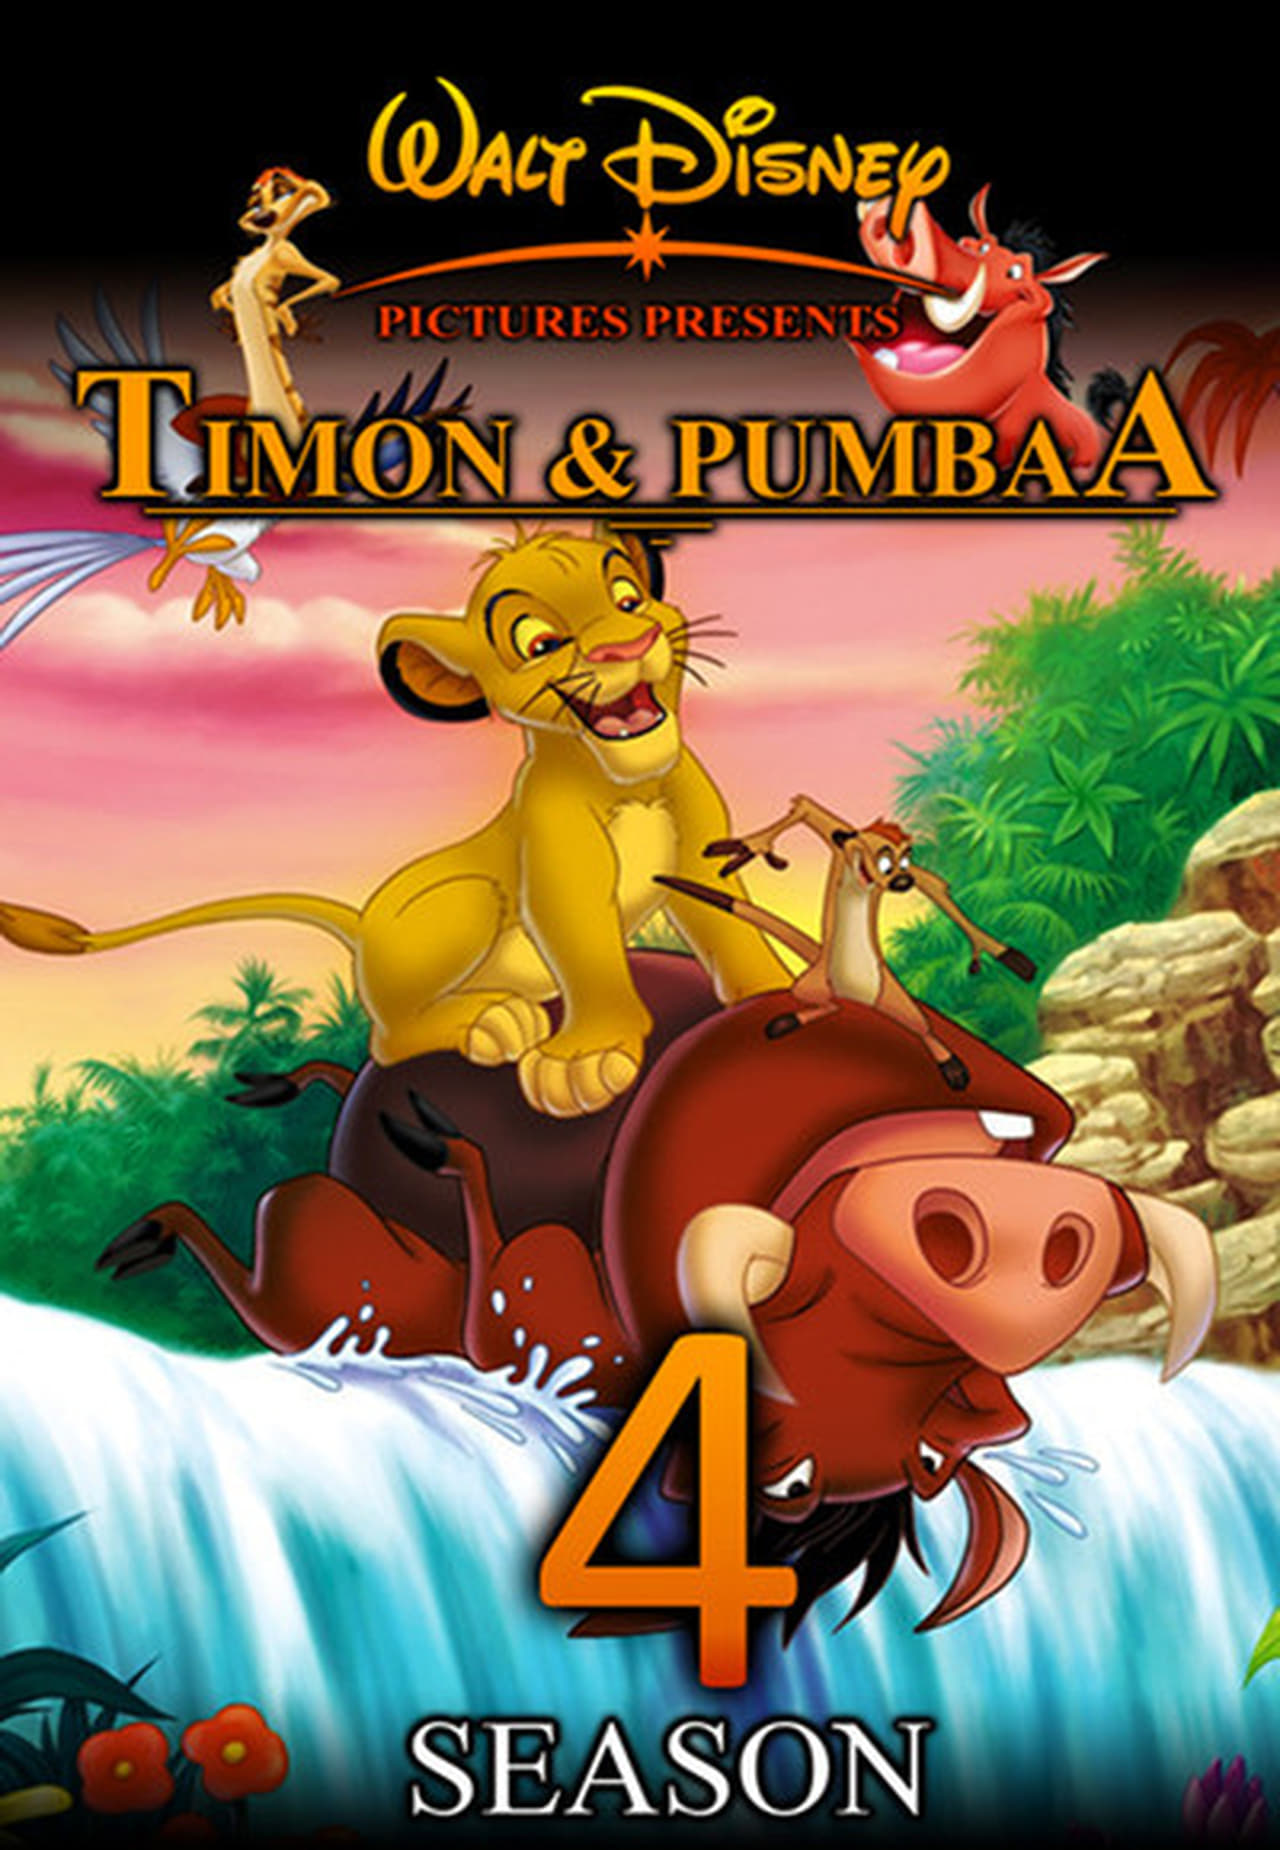 Timon & Pumbaa Season 4